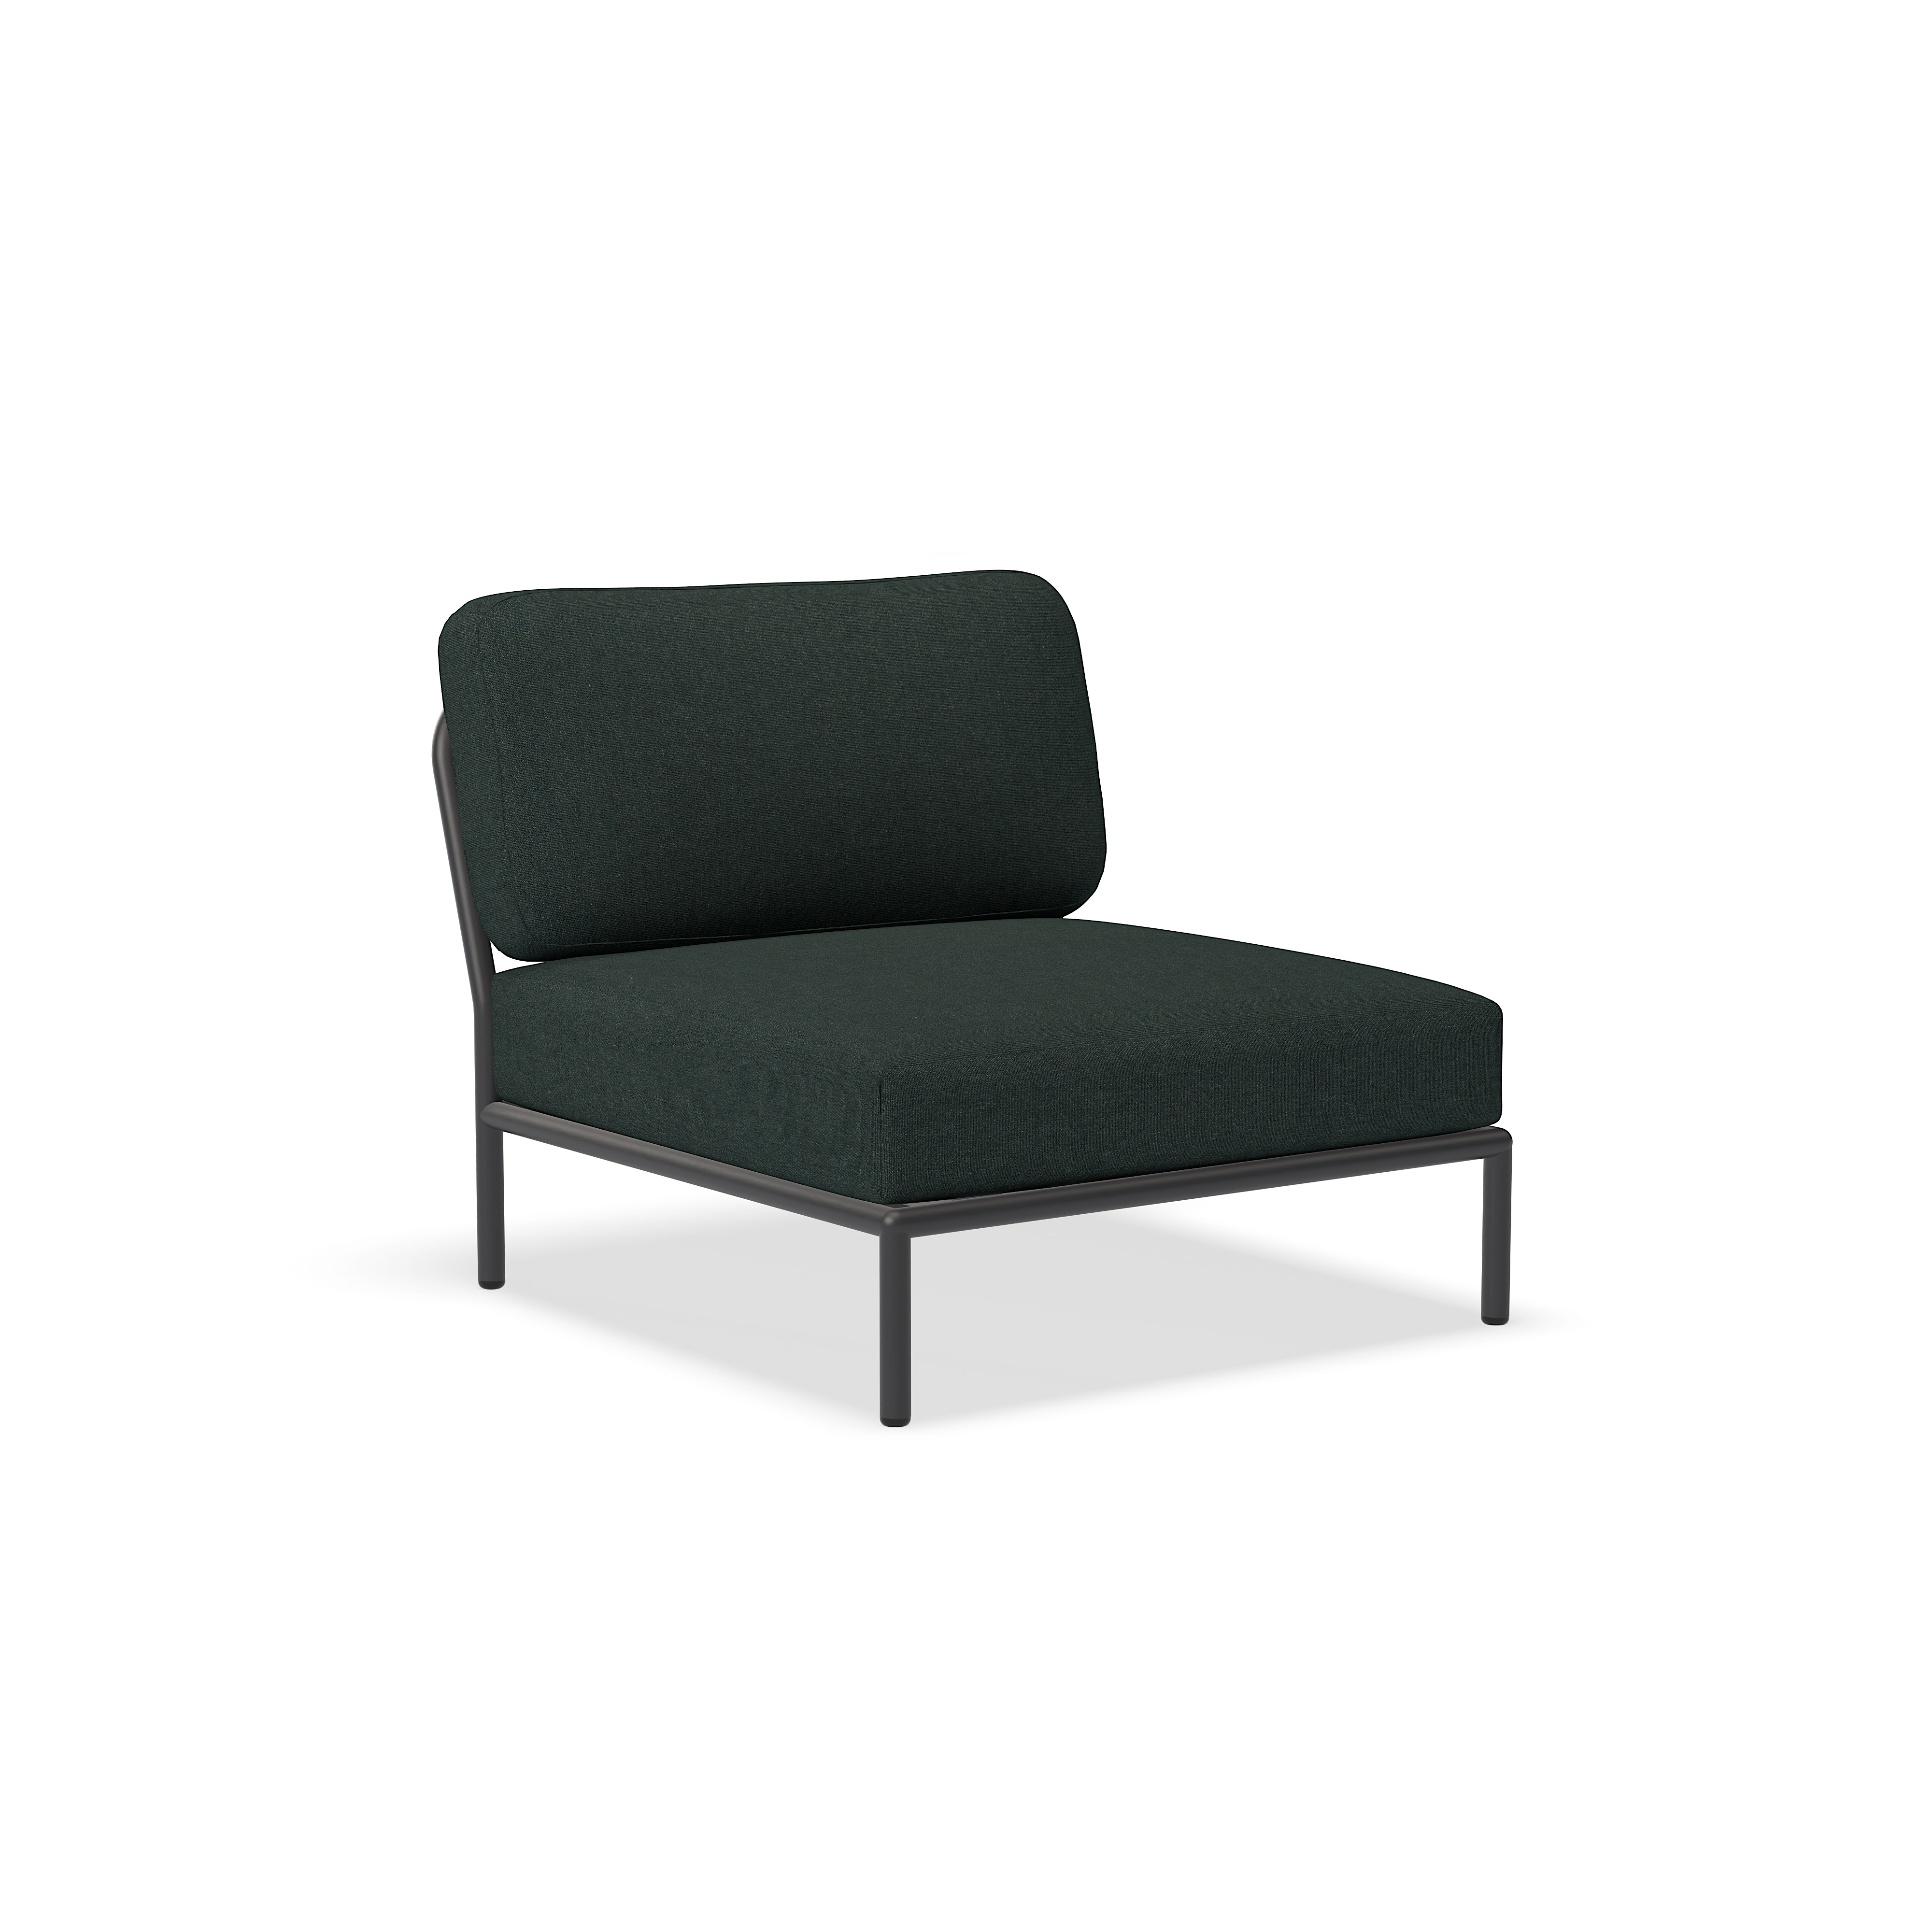 الكرسي - 12205-4451 - كرسي ، جبال الألب (HERITAGE) ، هيكل رمادي غامق